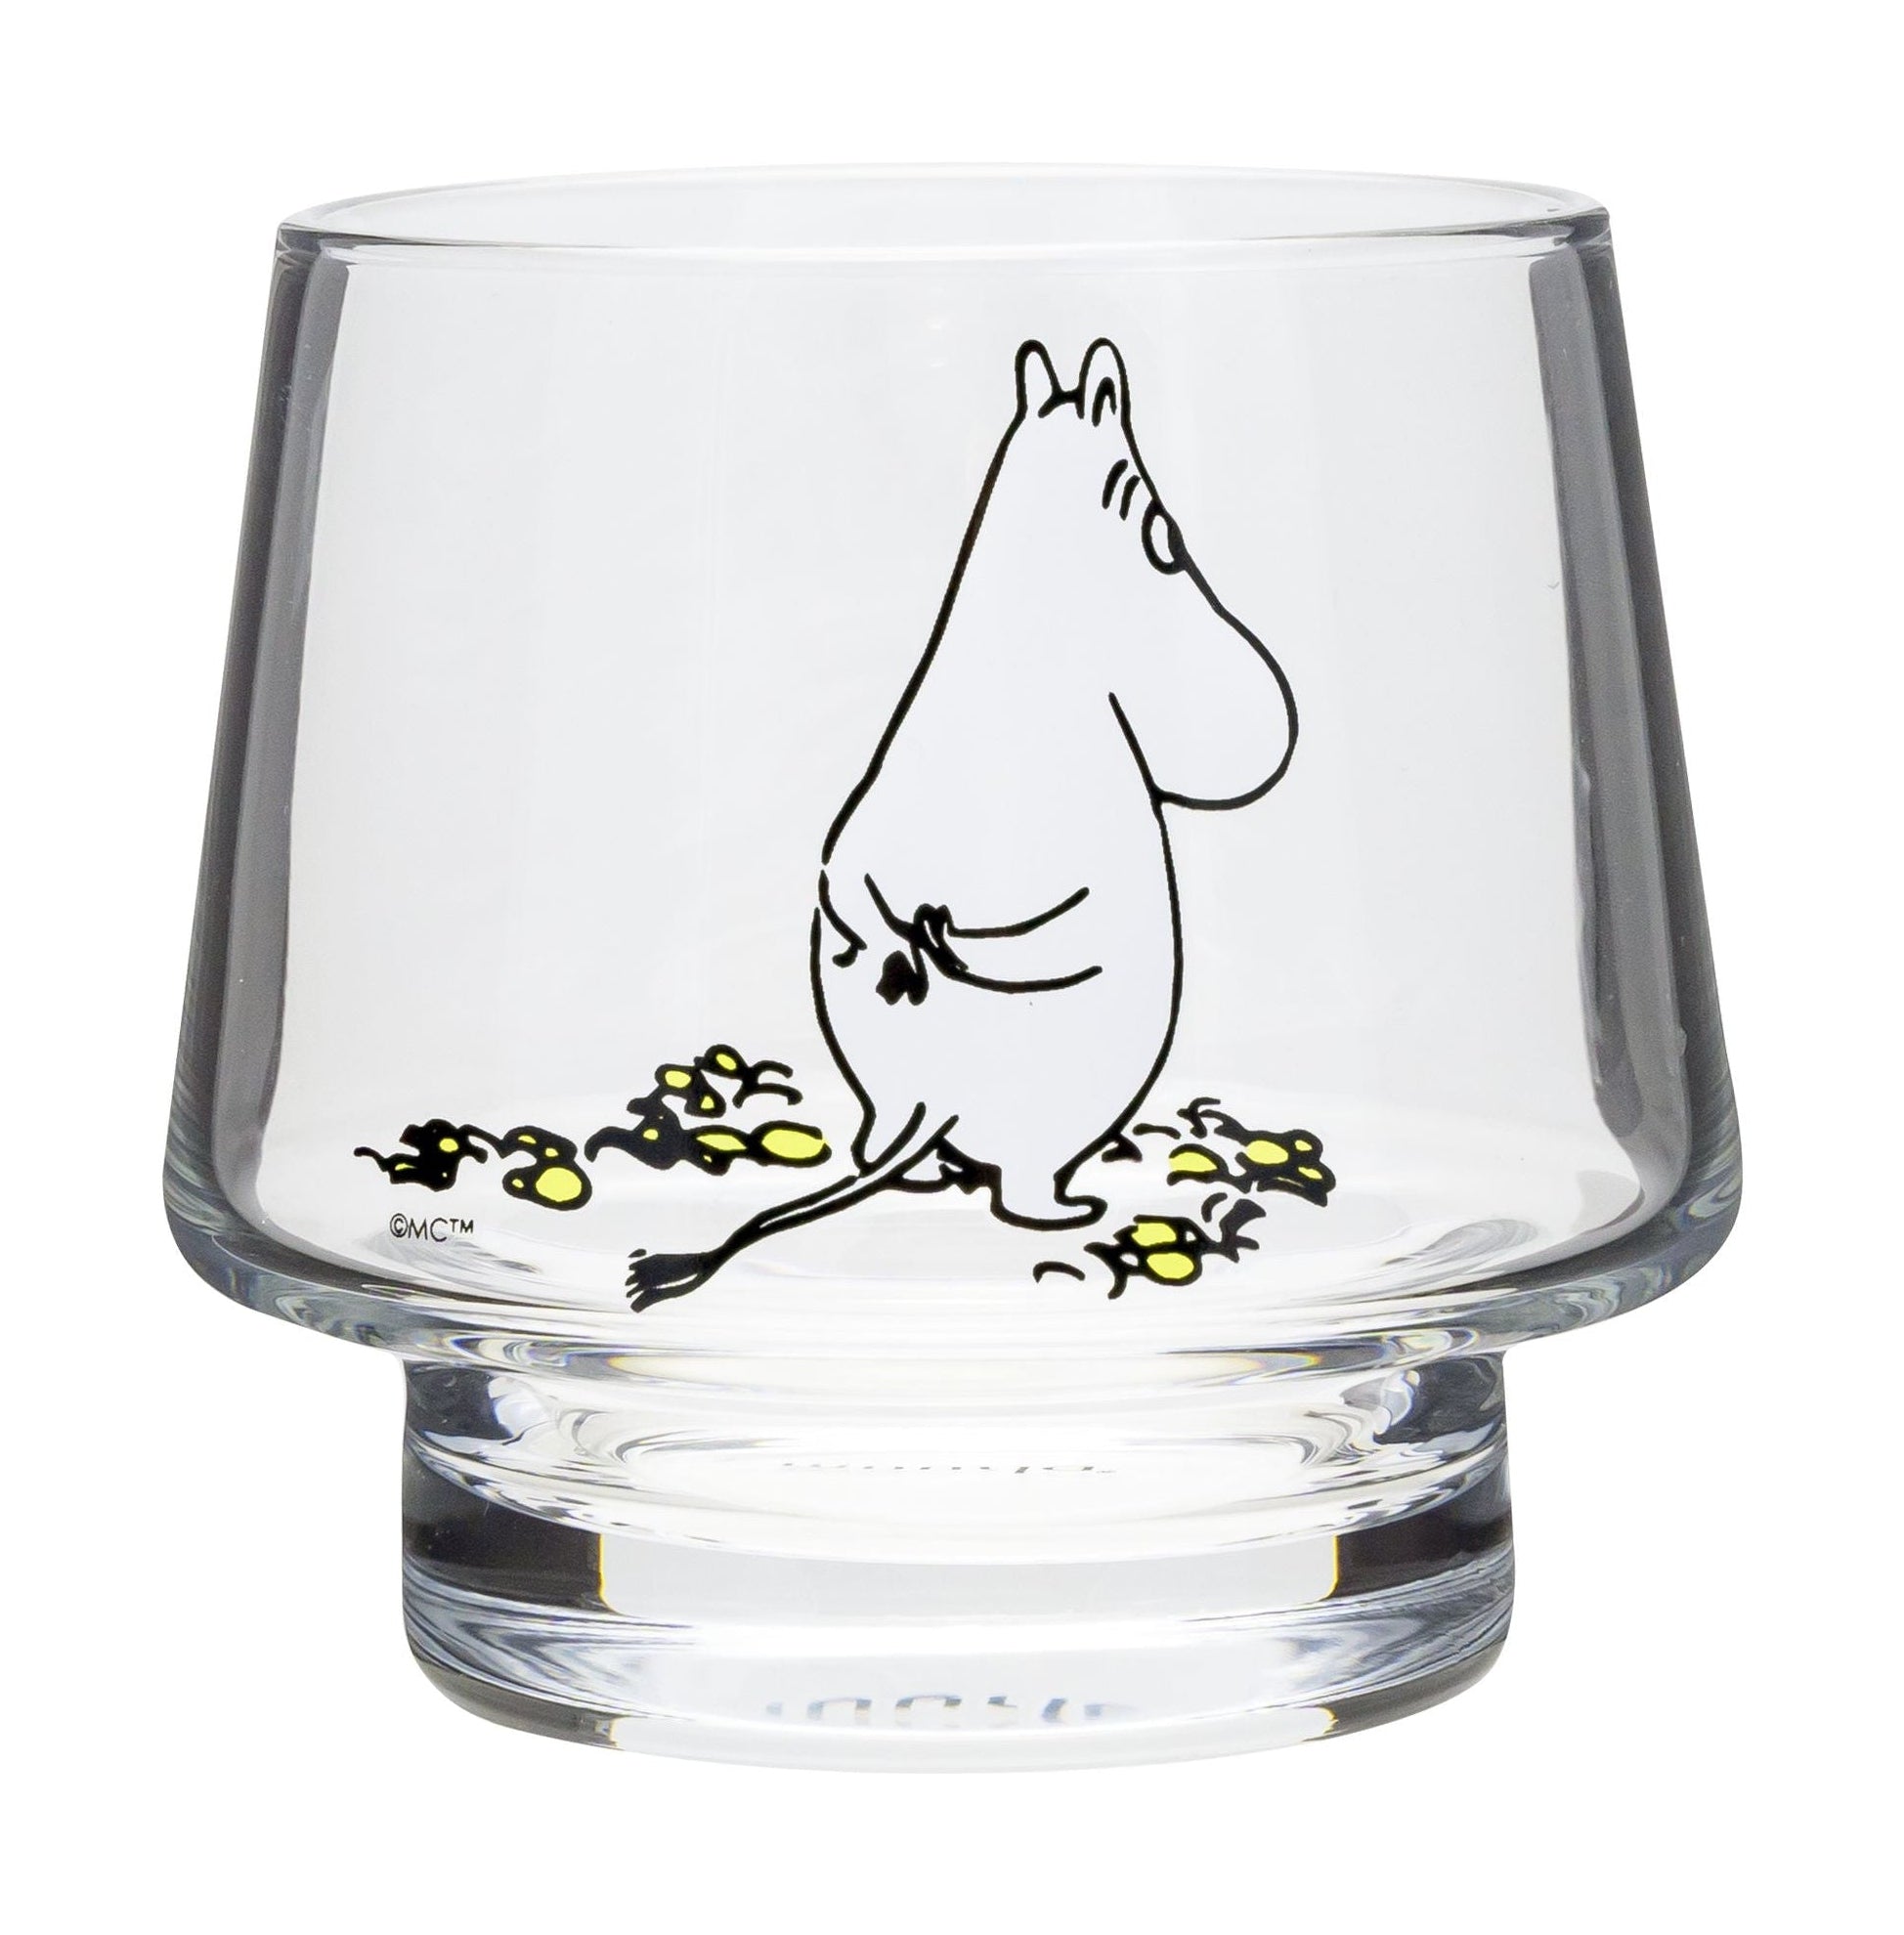 Muurla Moomin Originals Teelight -Halter, das Warten